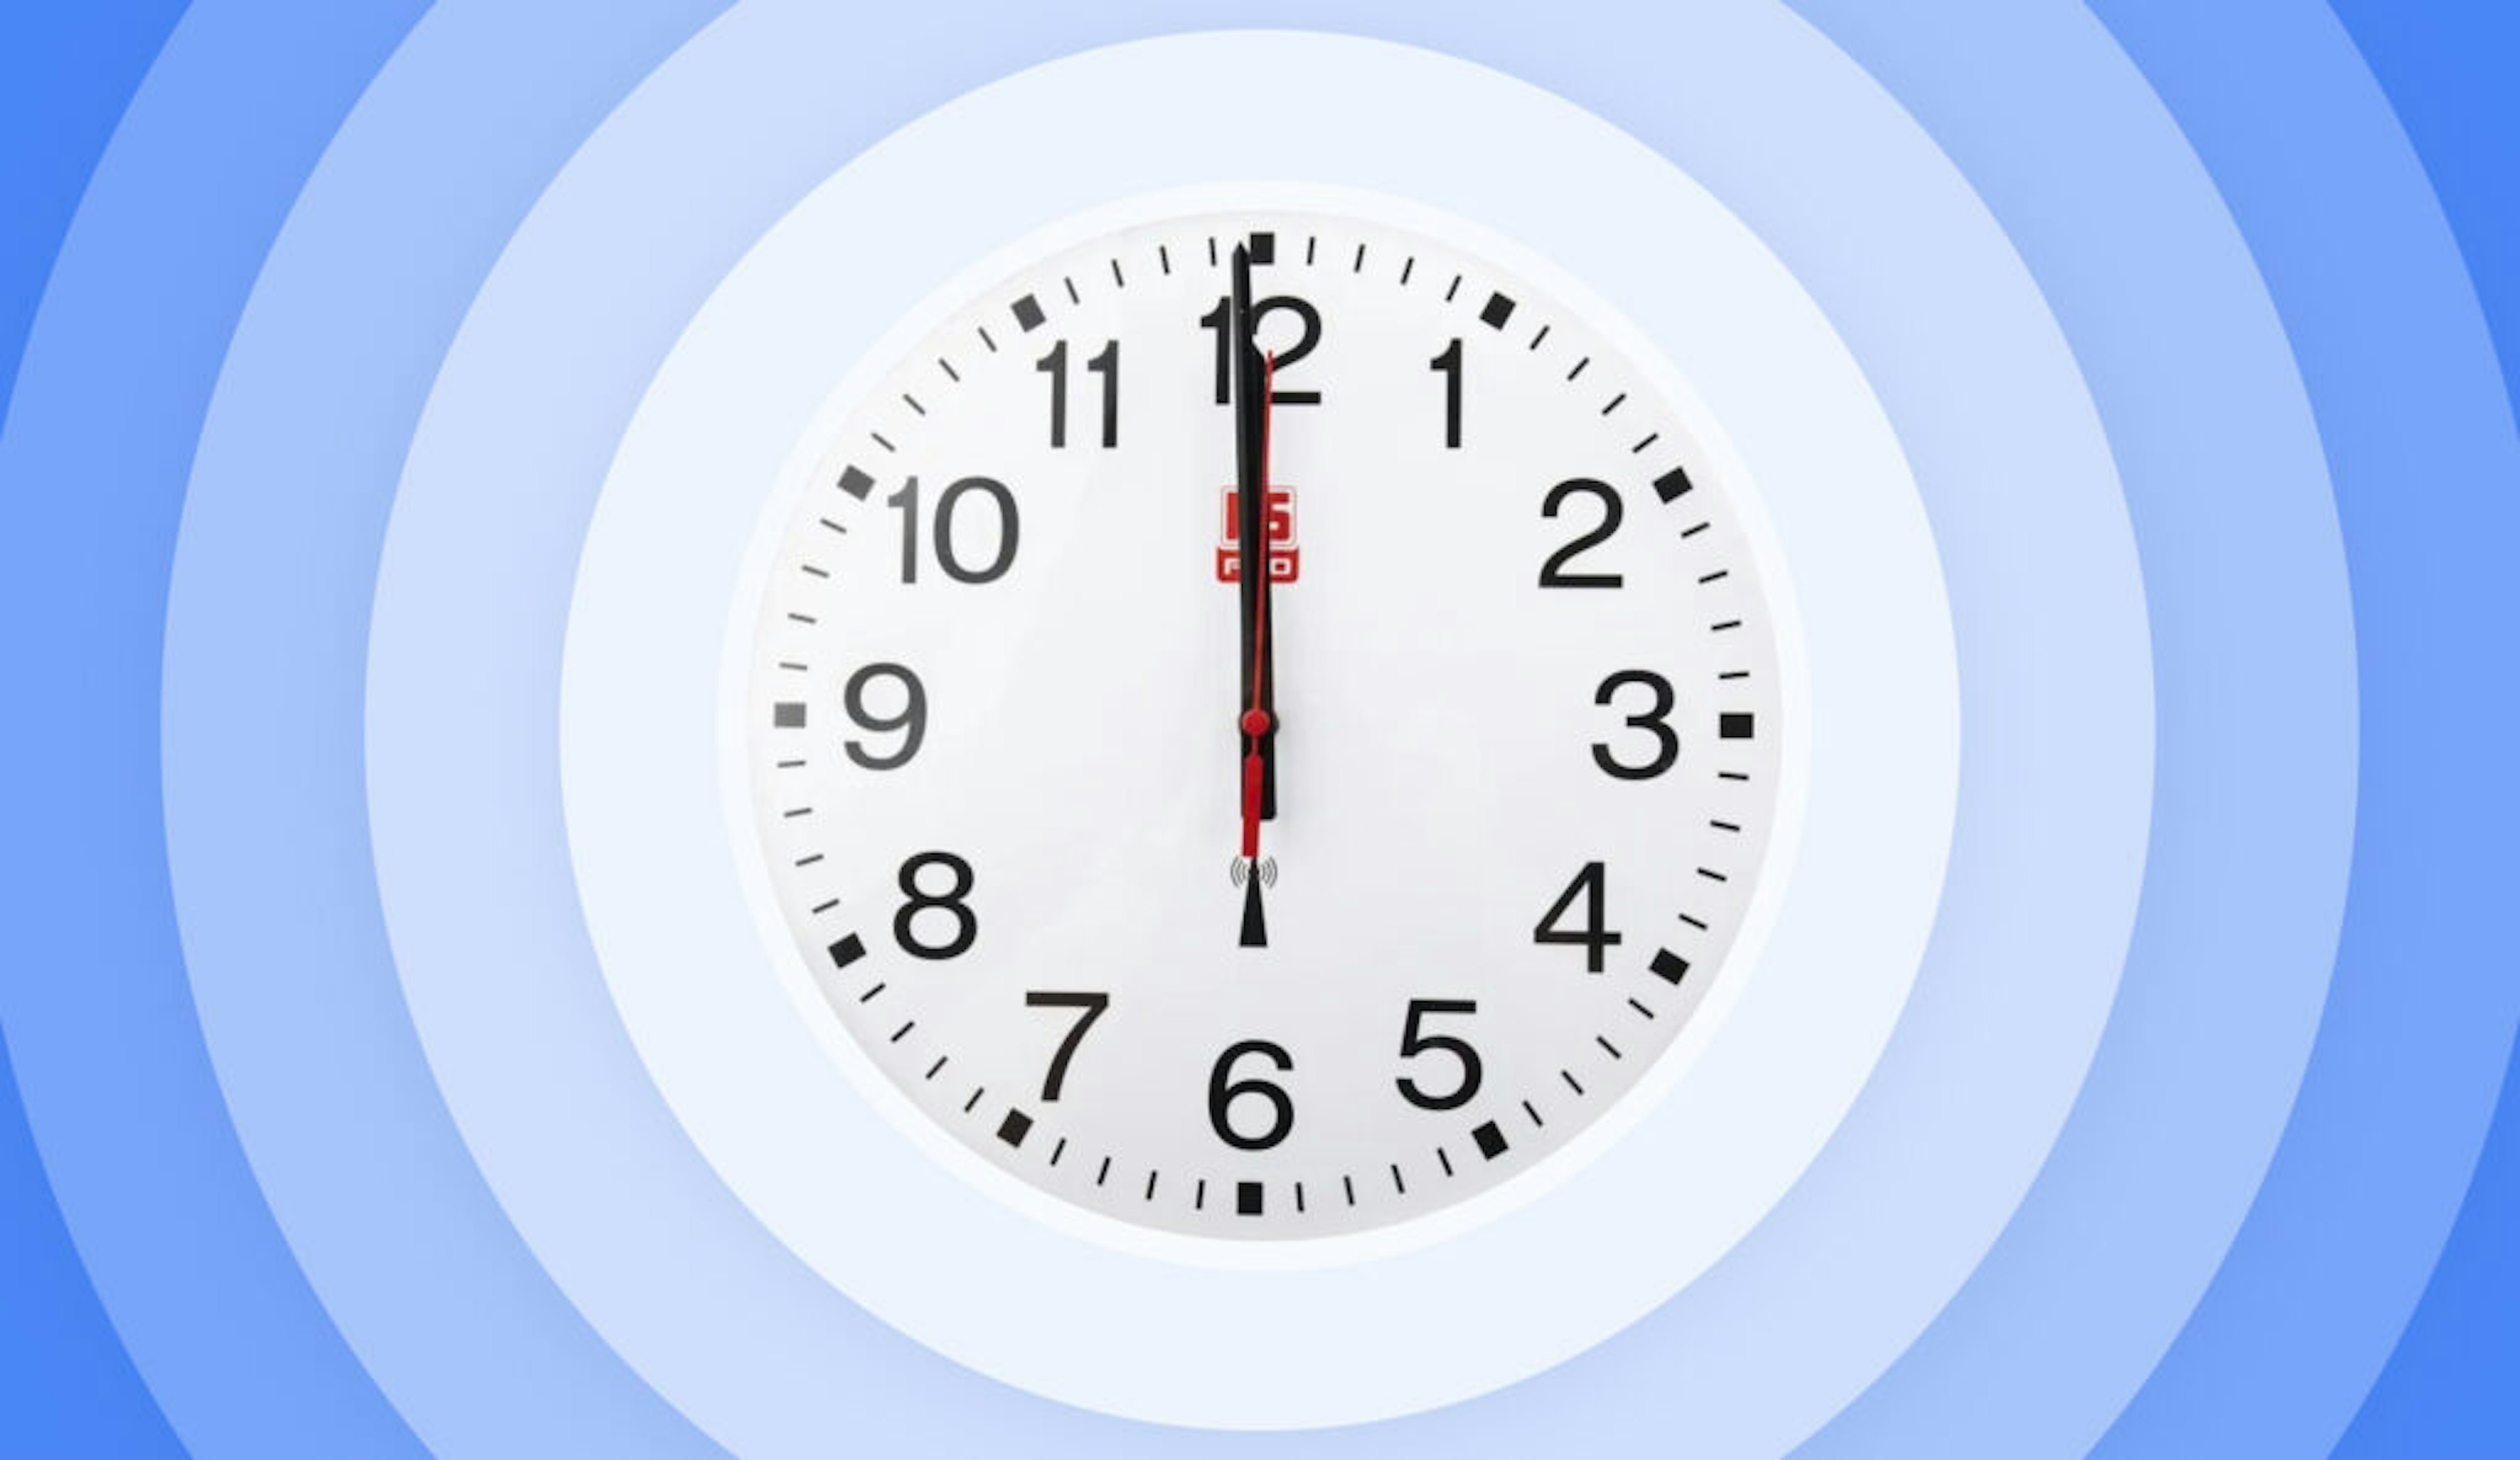 A clock at 12 pm